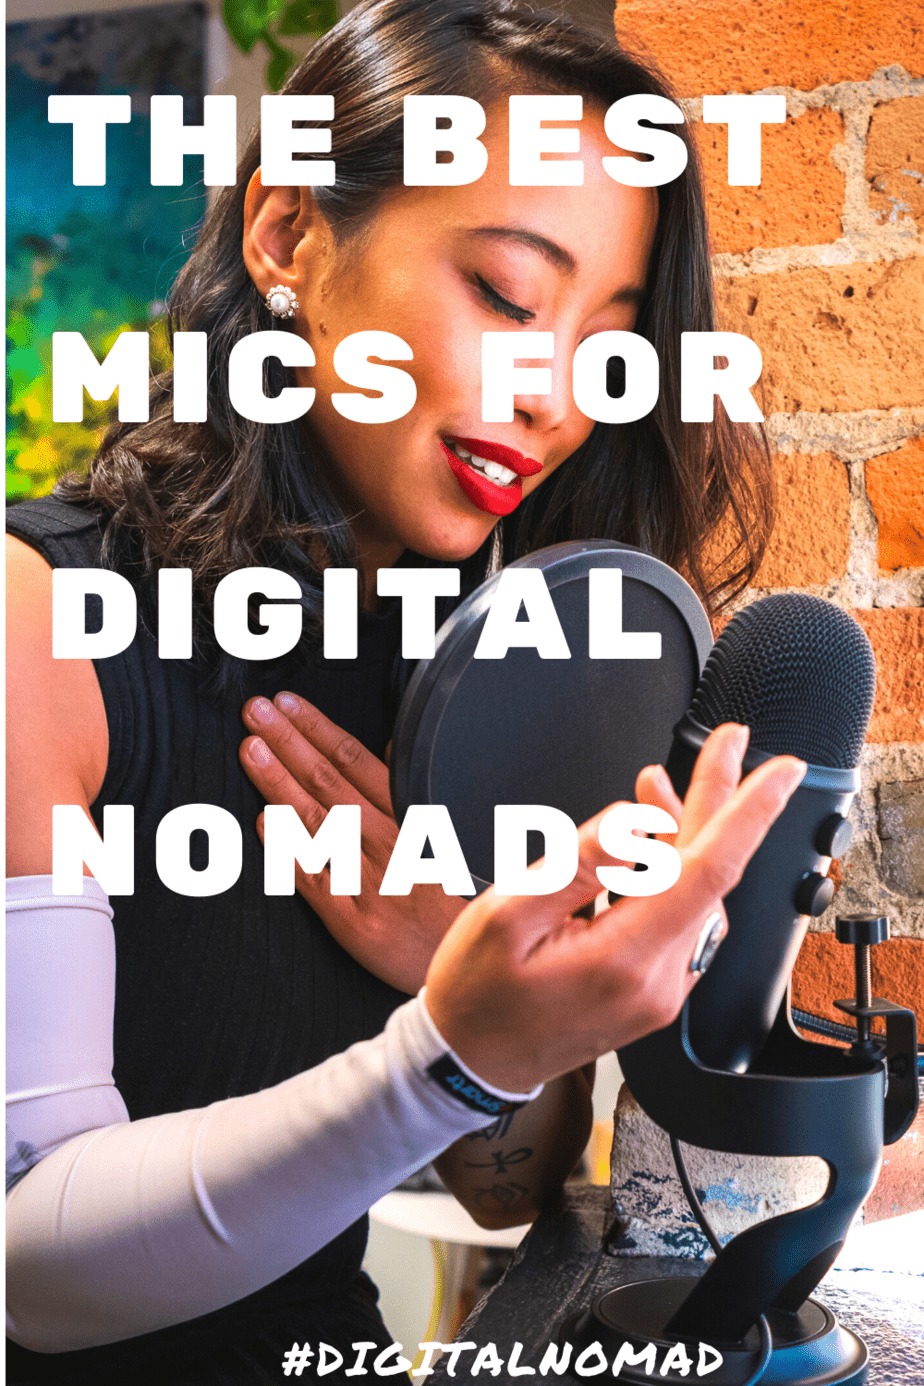 5 best noise-canceling microphones for Digital Nomads